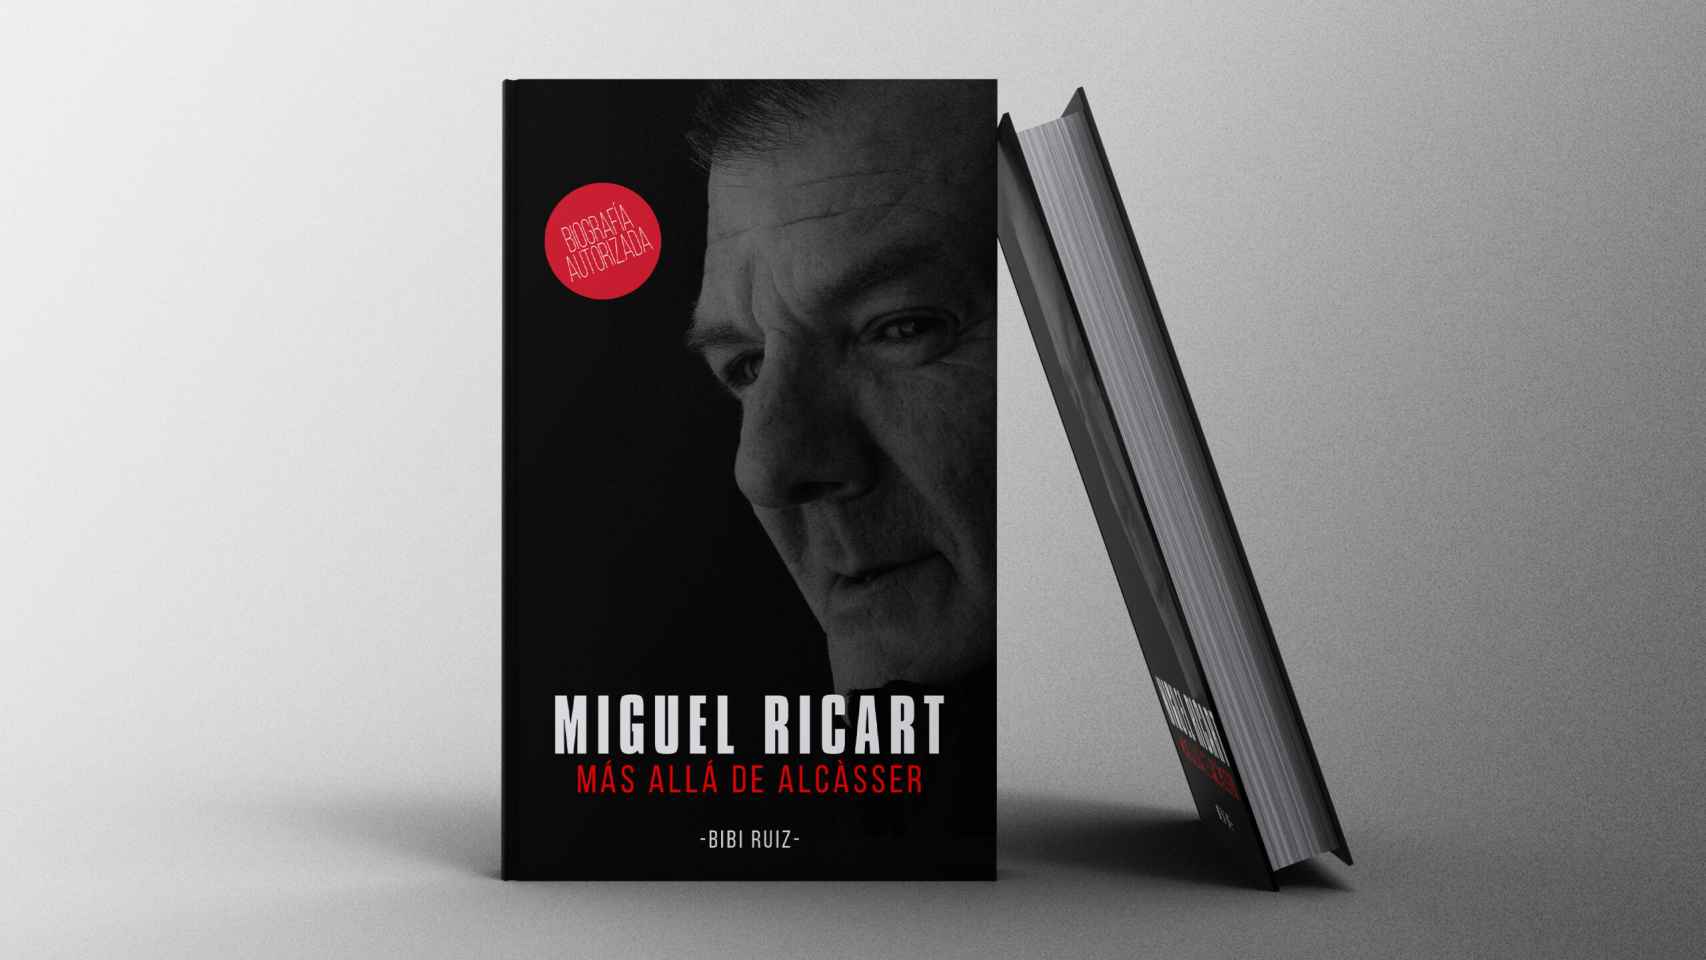 Biografía autorizada de Miguel Ricart, triple asesino de las niñas de Alcàsser. EE